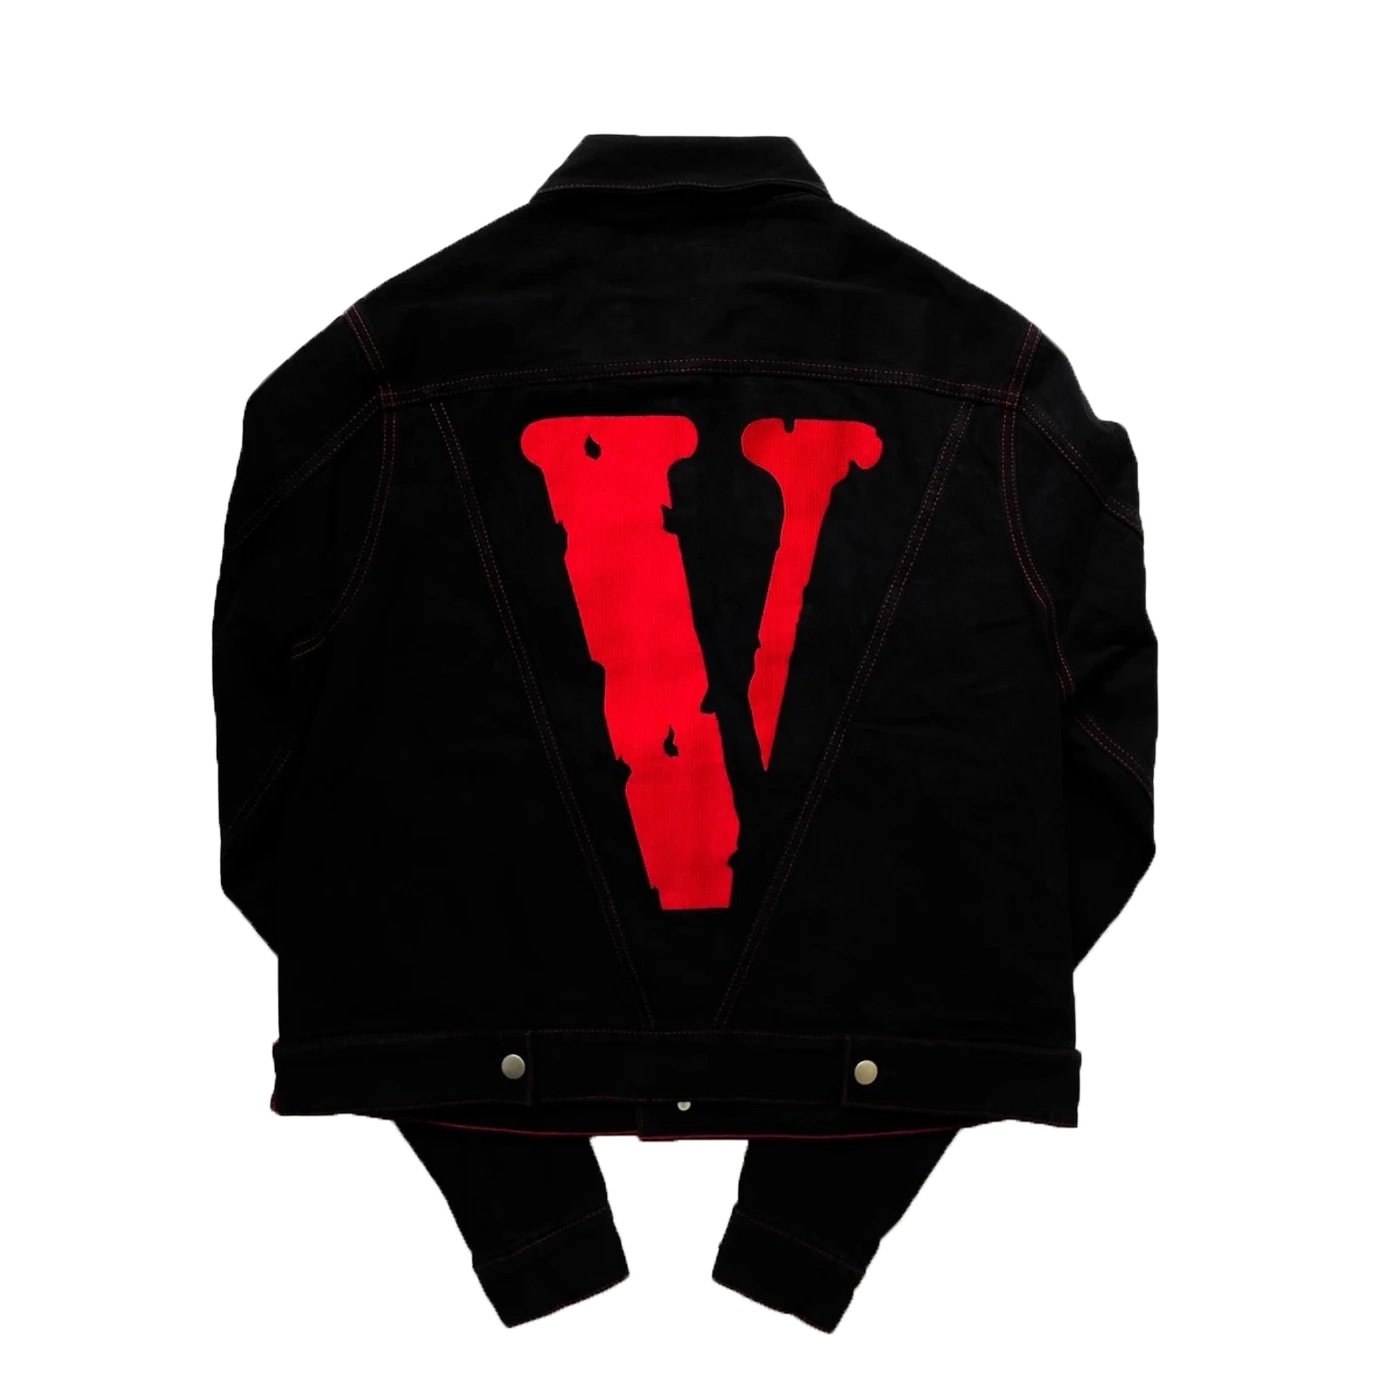 Vlone Friends Denim Jacket Black / Red (Gently Used) - Paroissesaintefoy Sneakers Sale Online